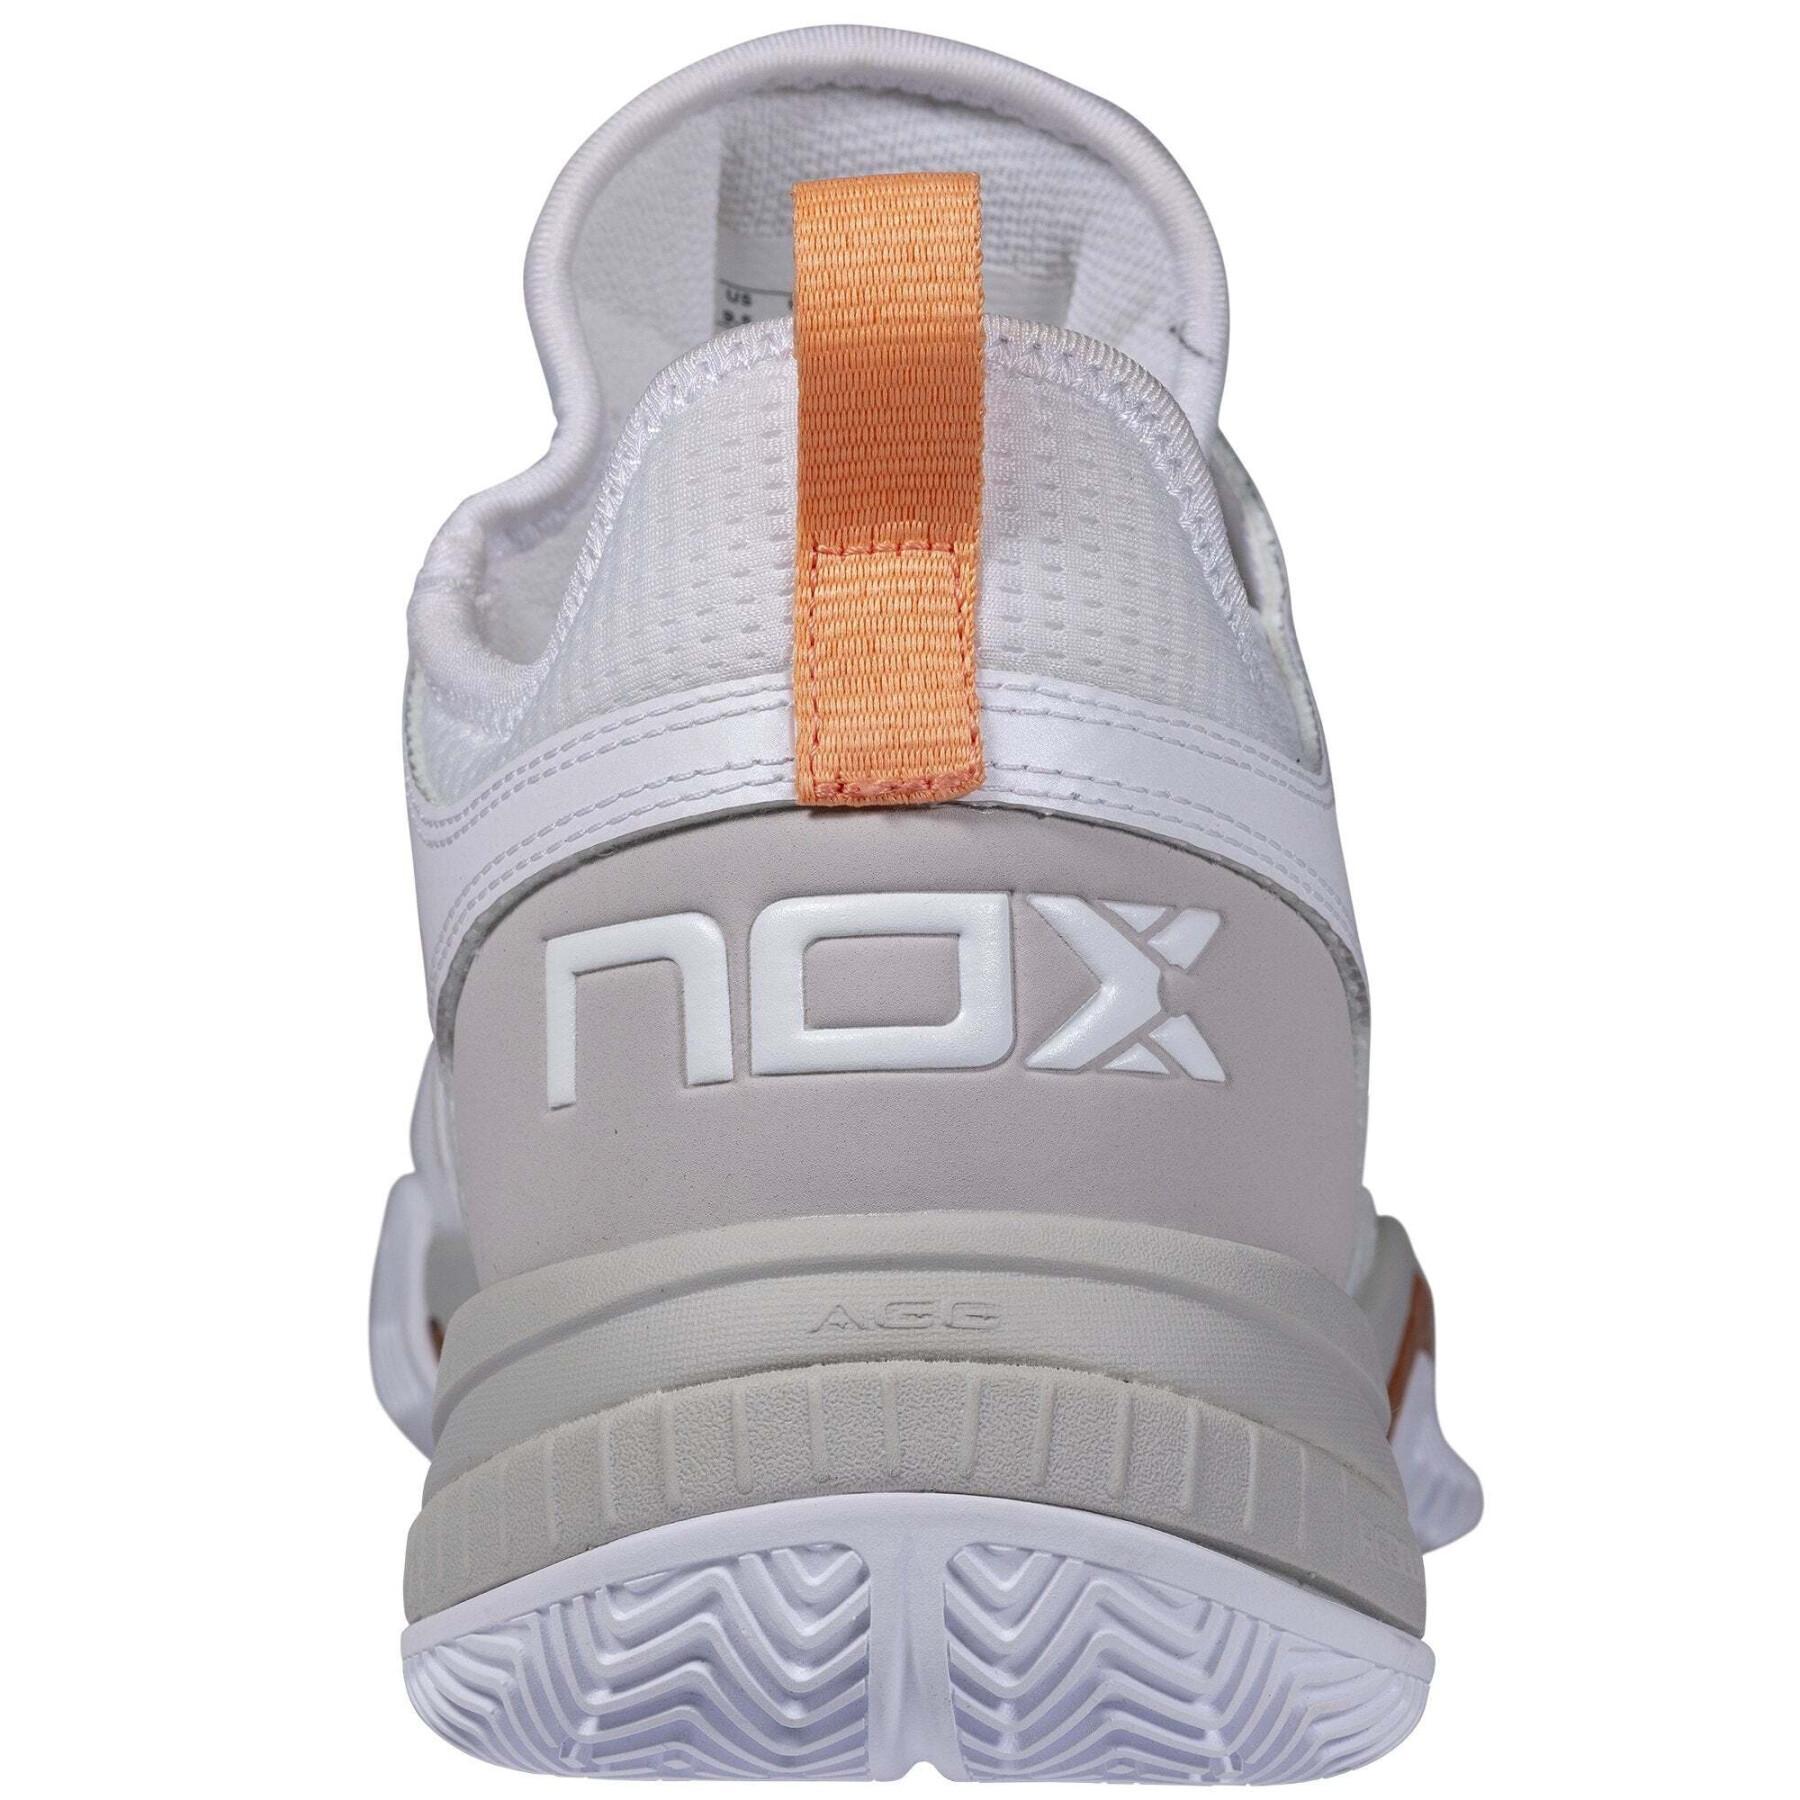 Schoenen van padel Nox